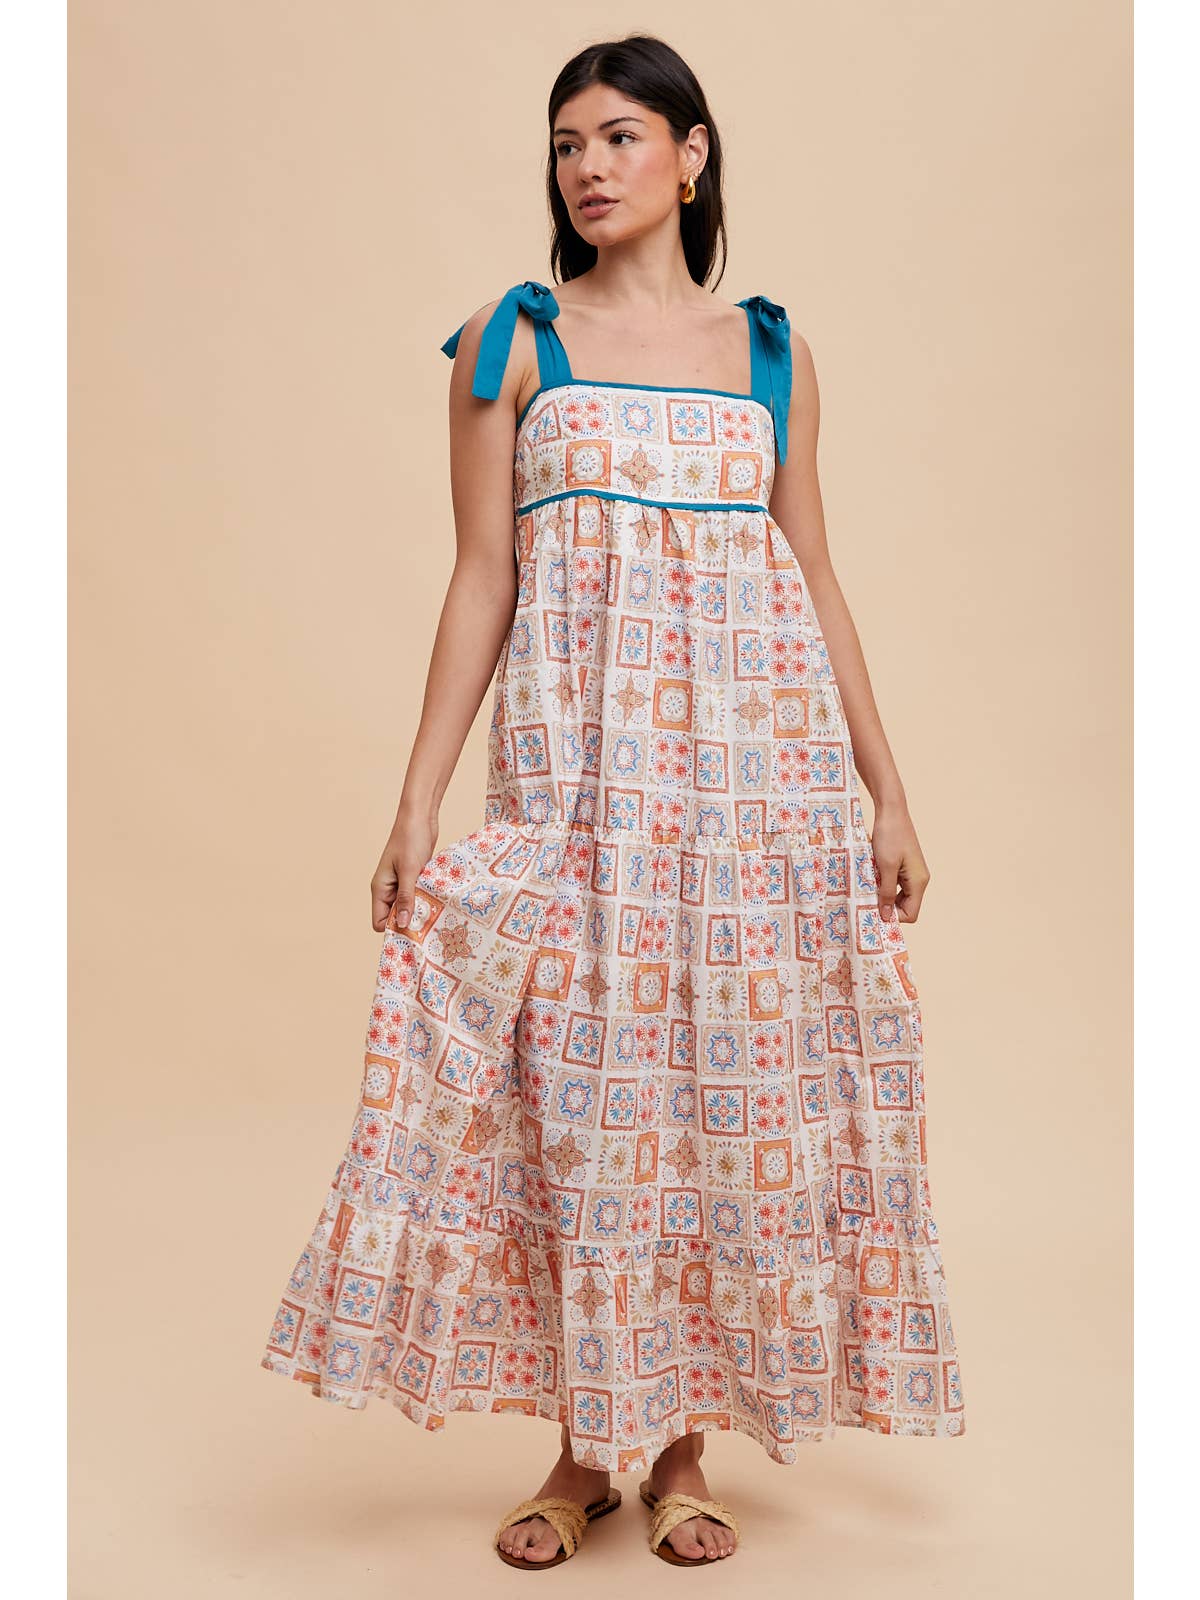 Tilework Print Sleeveless Cotton Maxi Dress